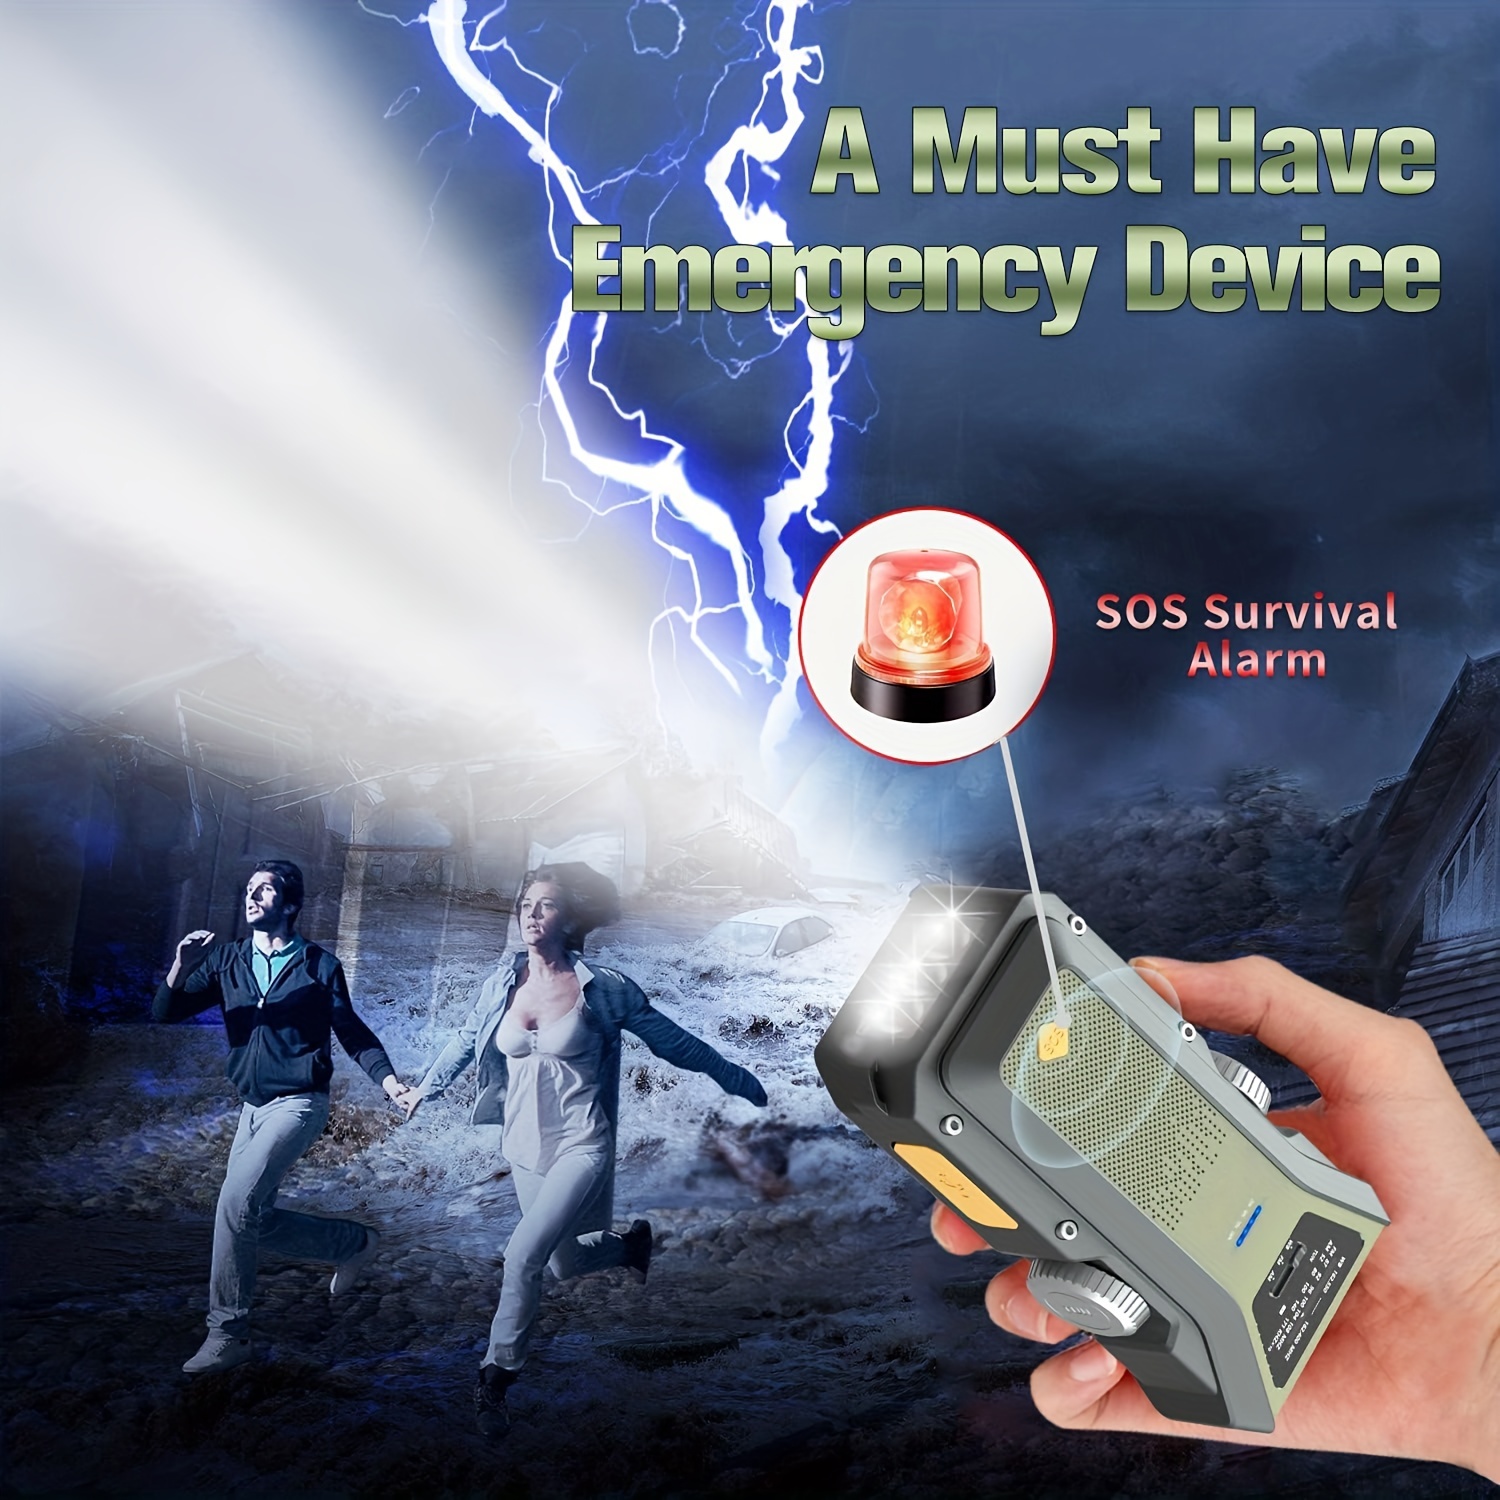 Radio à manivelle à énergie solaire, radio à manivelle d'urgence avec lampe  de poche et chargeur de téléphone portable, radio météo AM/FM NOAA